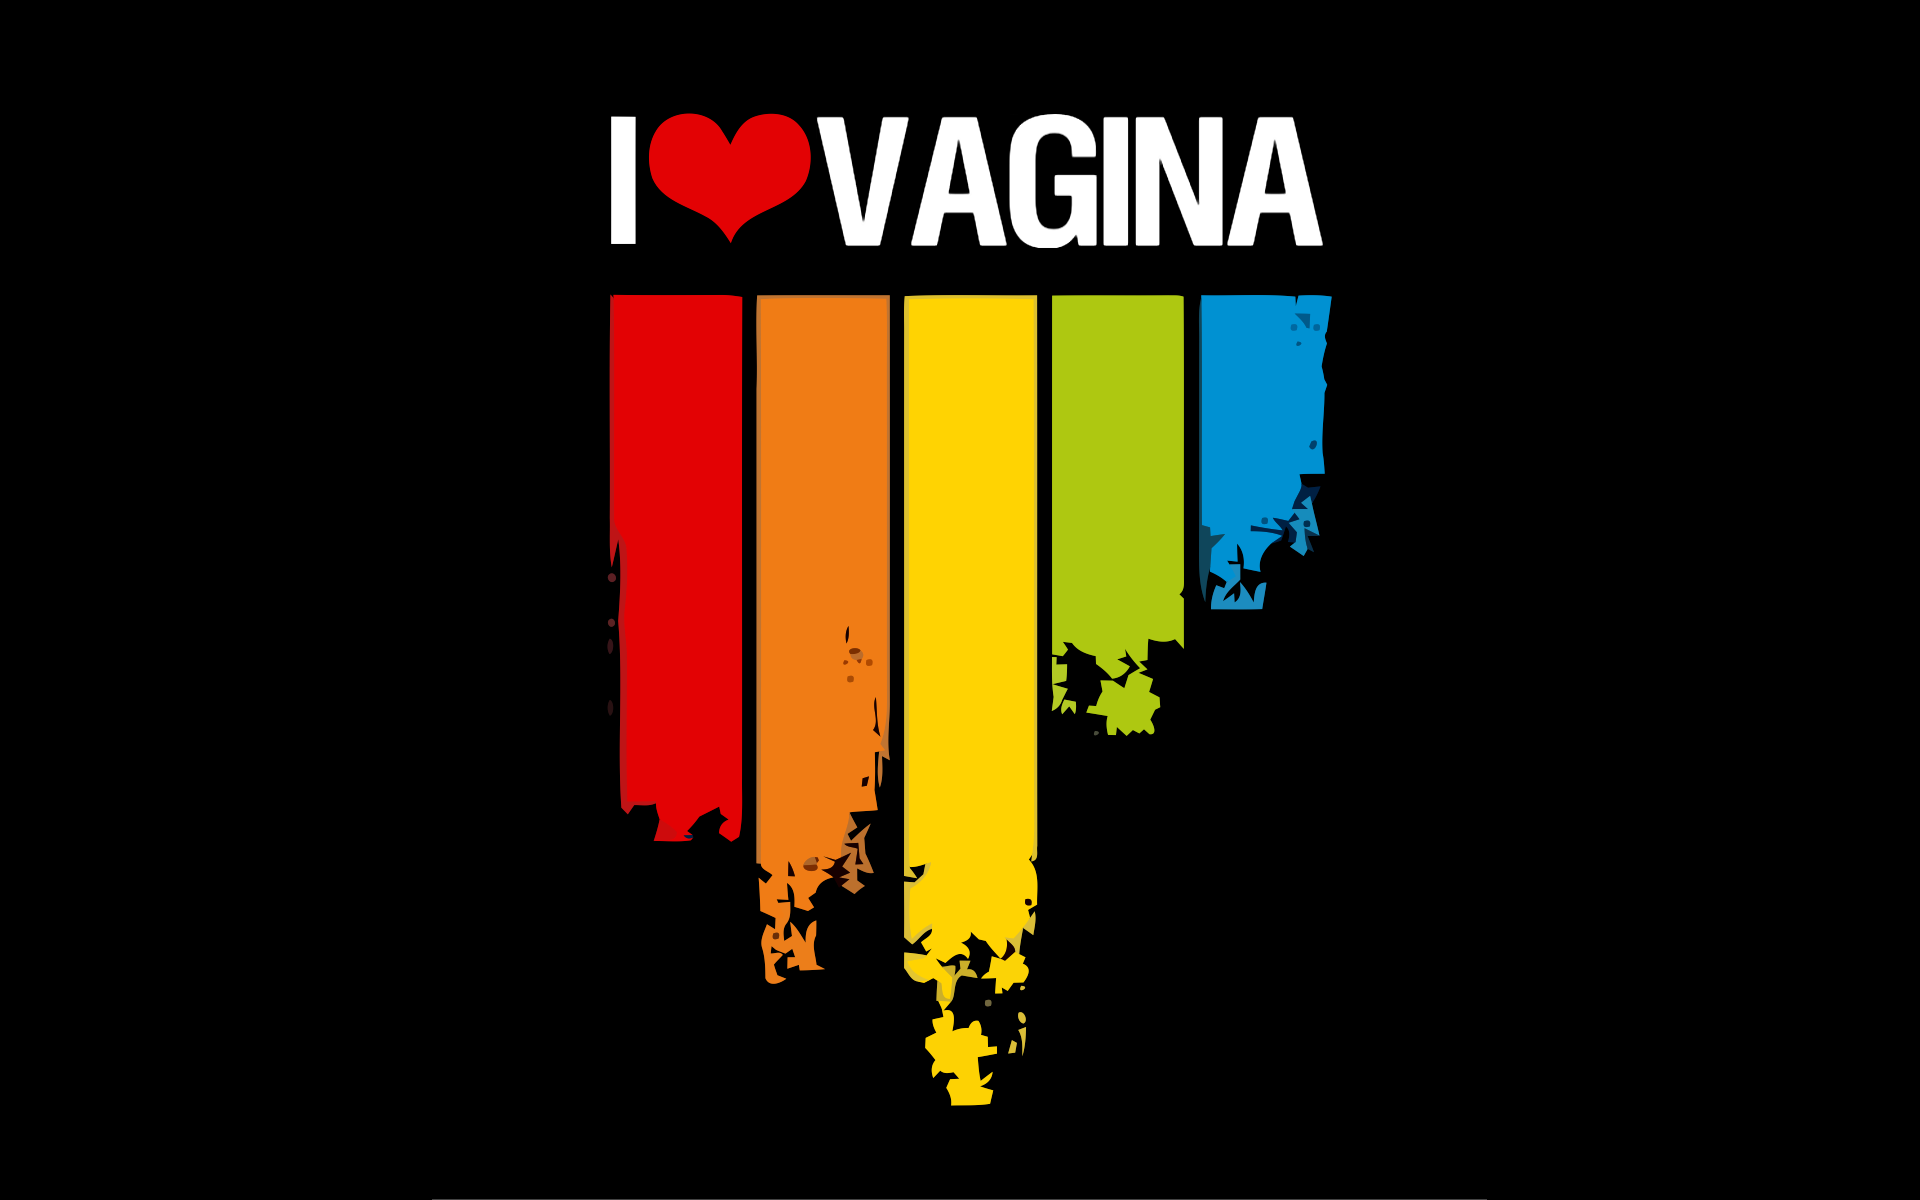 I love vagina